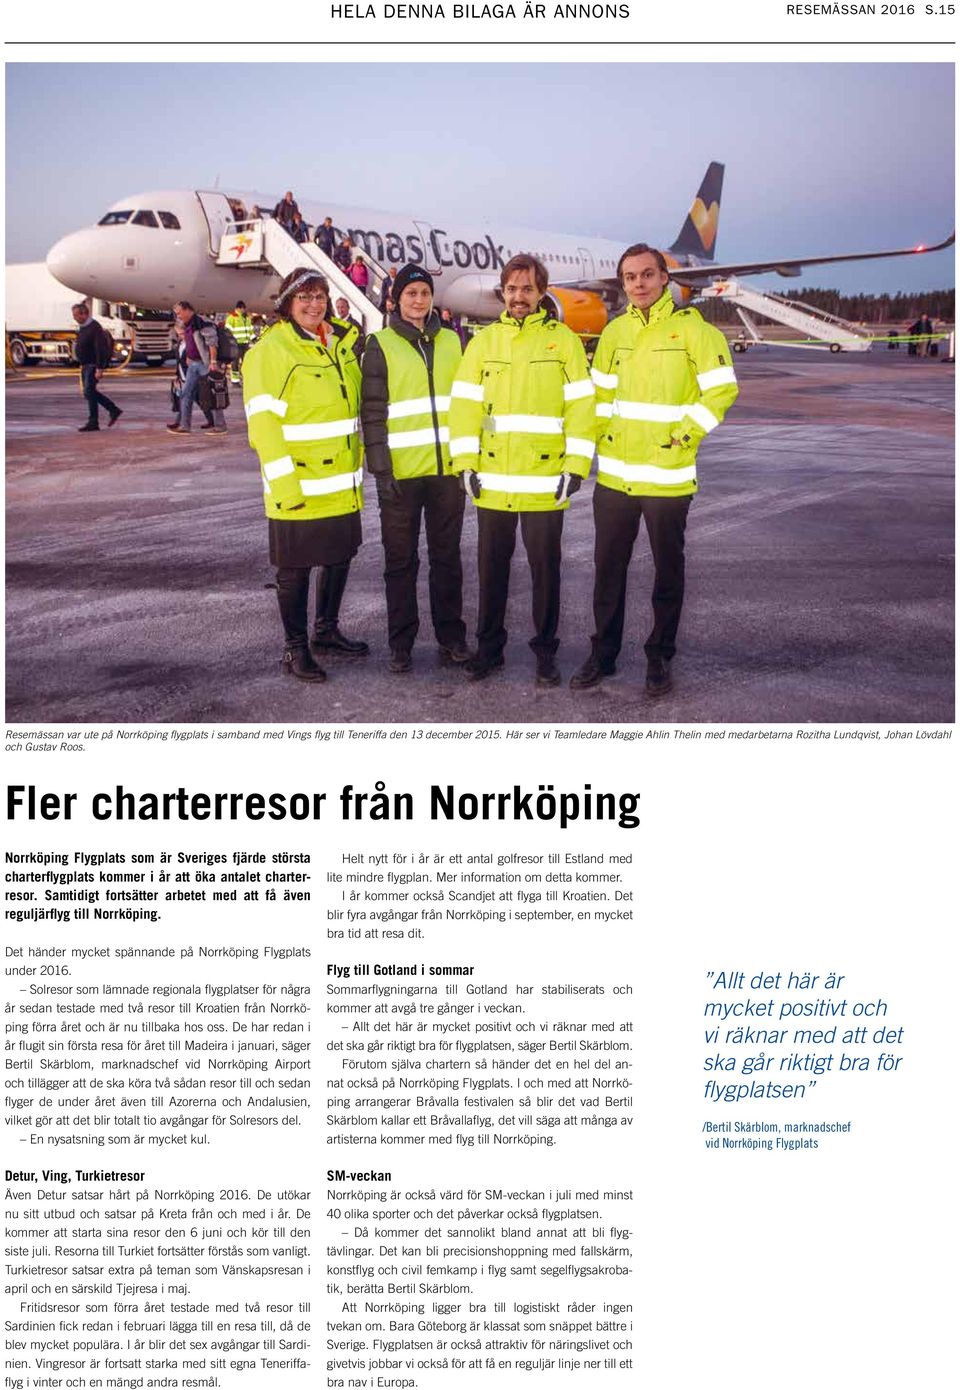 Fler charterresor från Norrköping Norrköping Flygplats som är Sveriges fjärde största charterflygplats kommer i år att öka antalet charterresor.